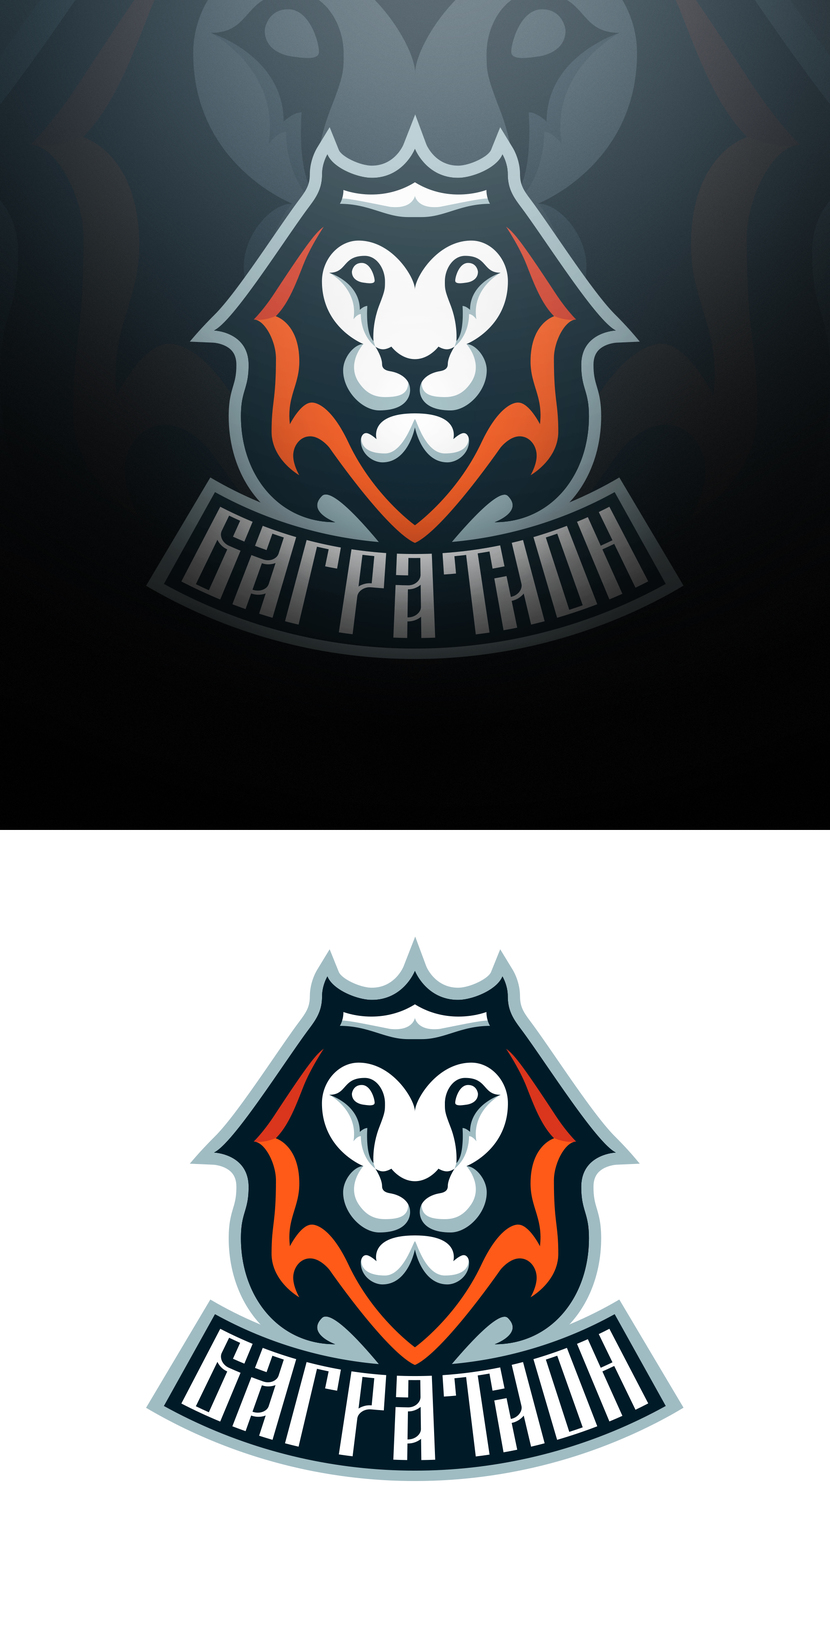 Образ льва взят с фамильного герба Багратионов - Разработка логотипа для хоккейной команды